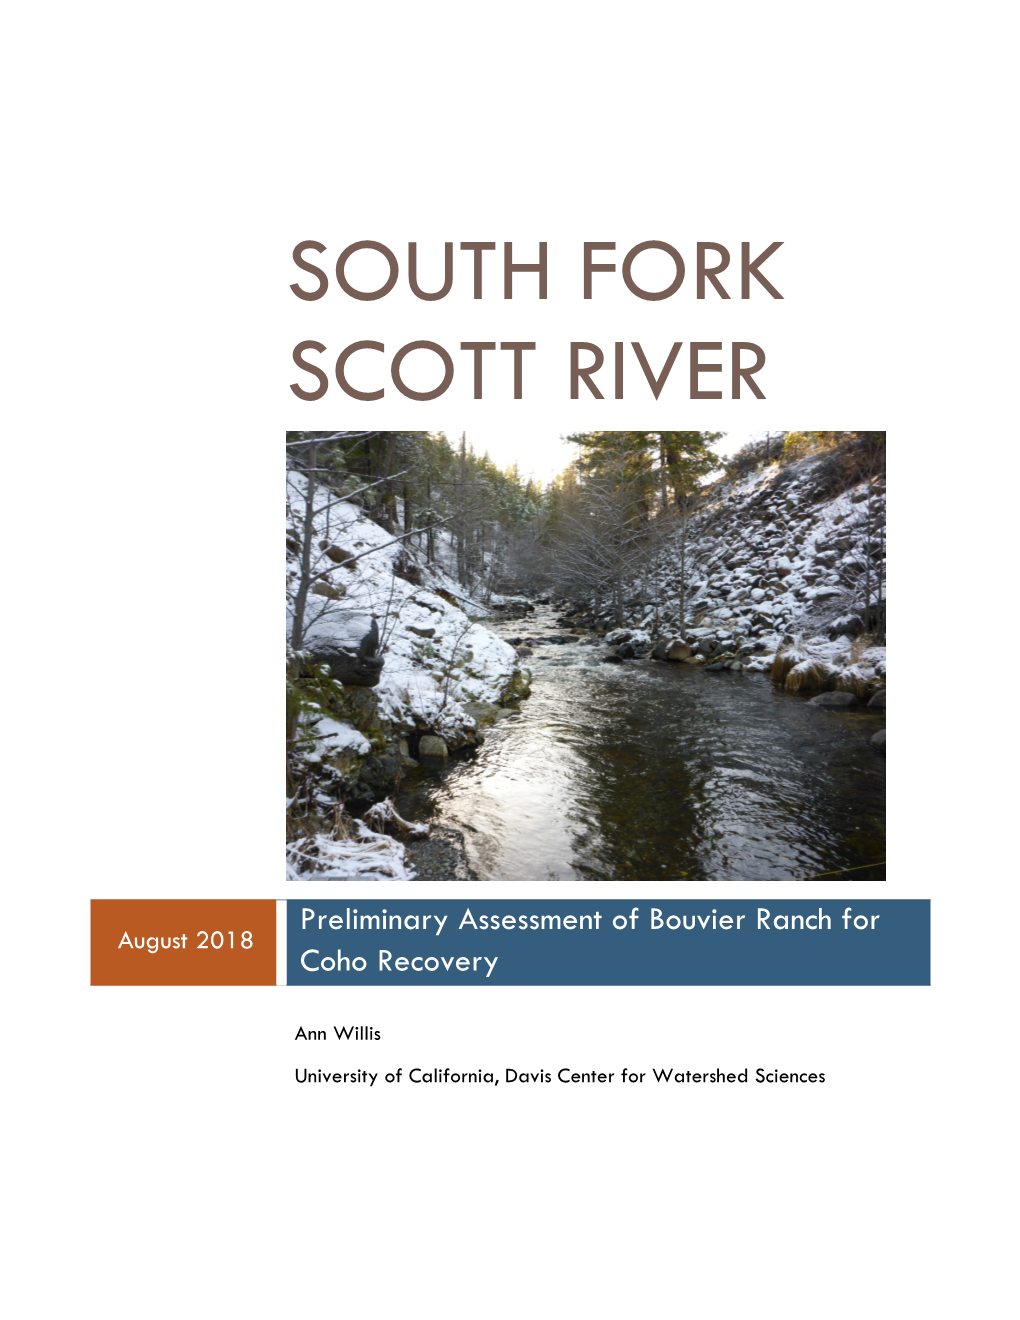 South Fork Scott River